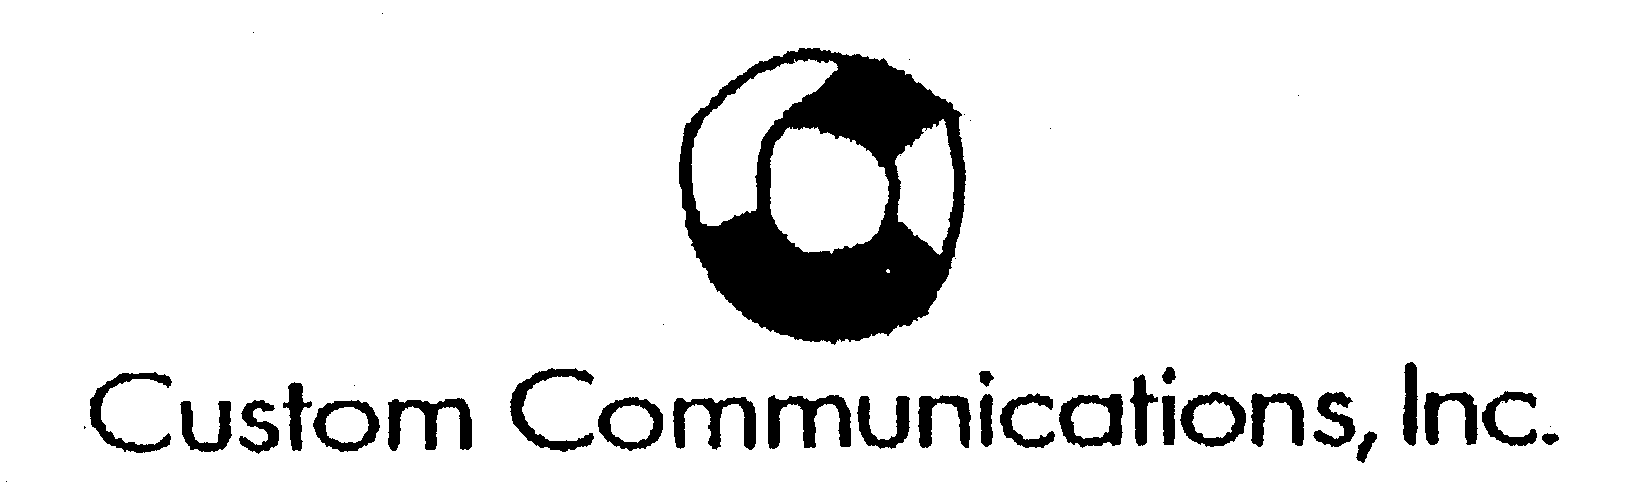  C CUSTOM COMMUNICATIONS, INC.